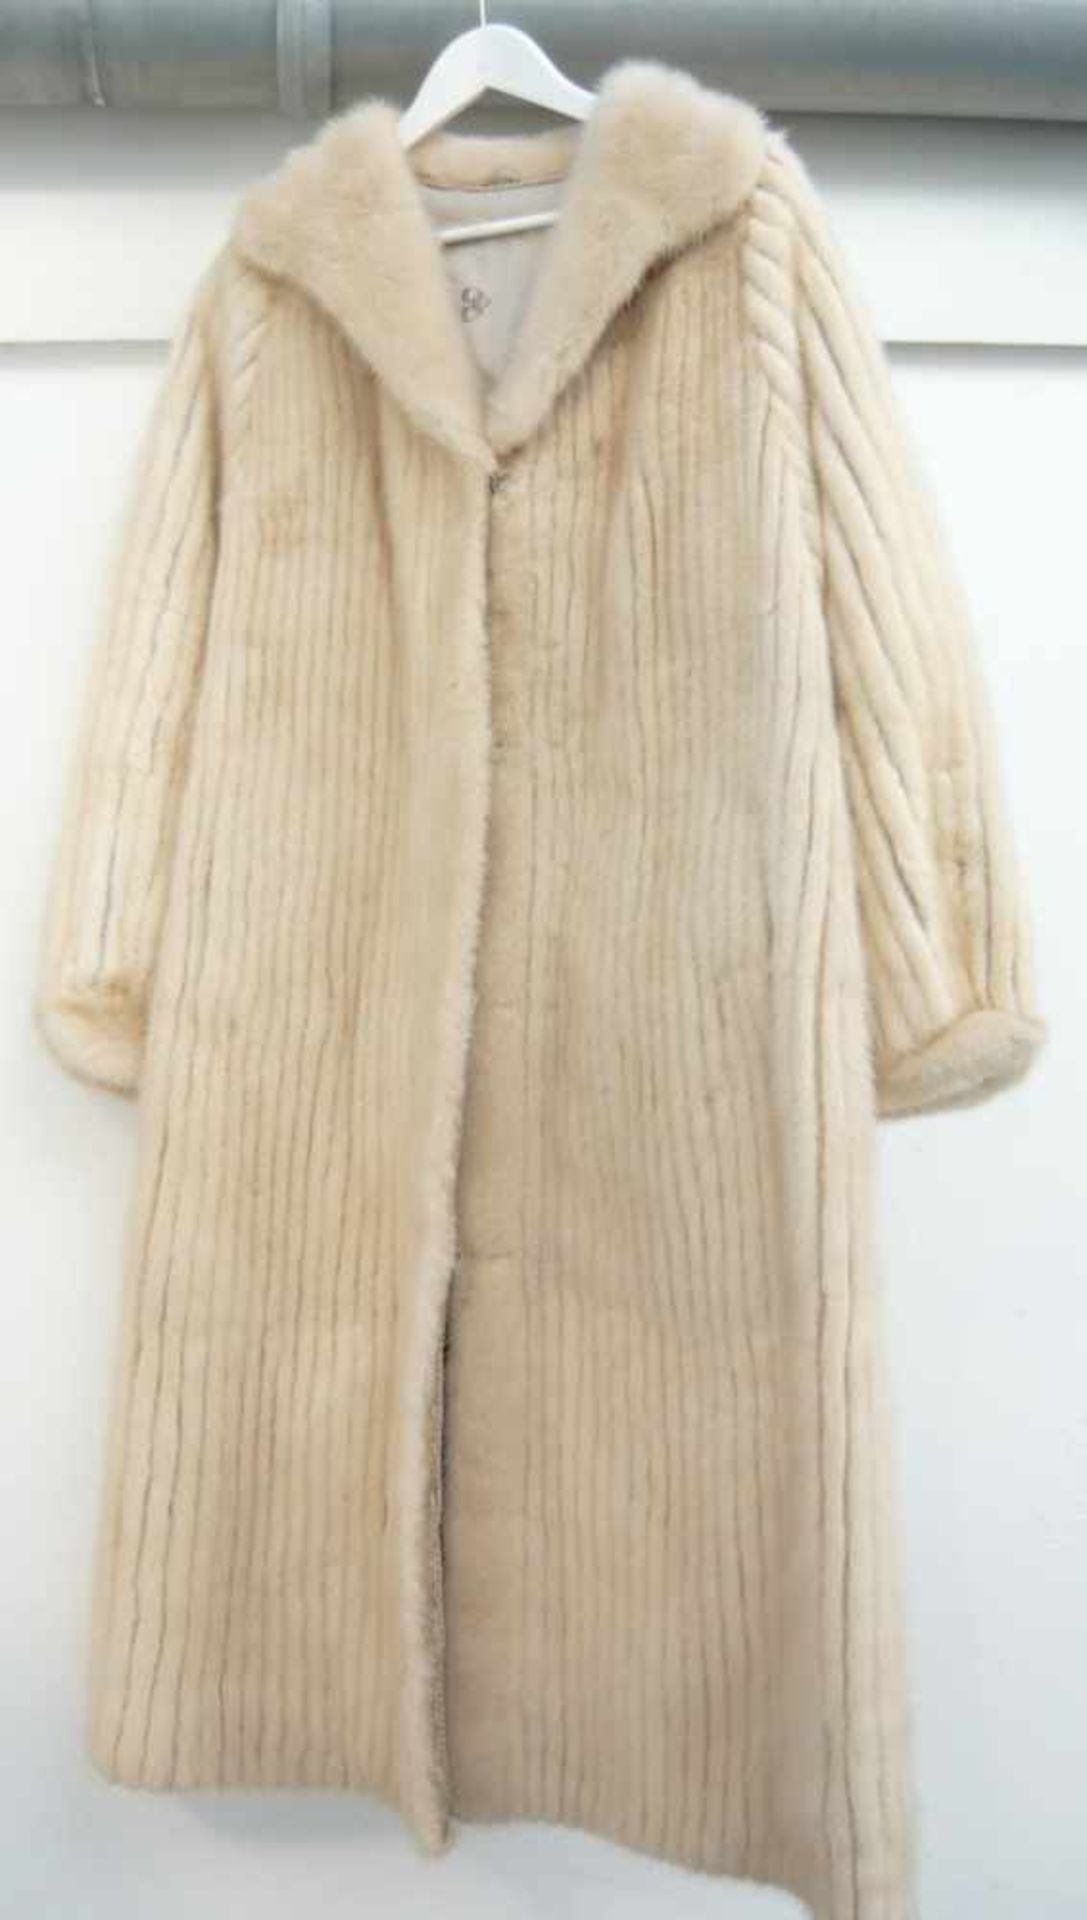 Langer Mantel aus weißem Nerz. Vintage. Top Zustand.Long coat in white mink. Vintage. Top